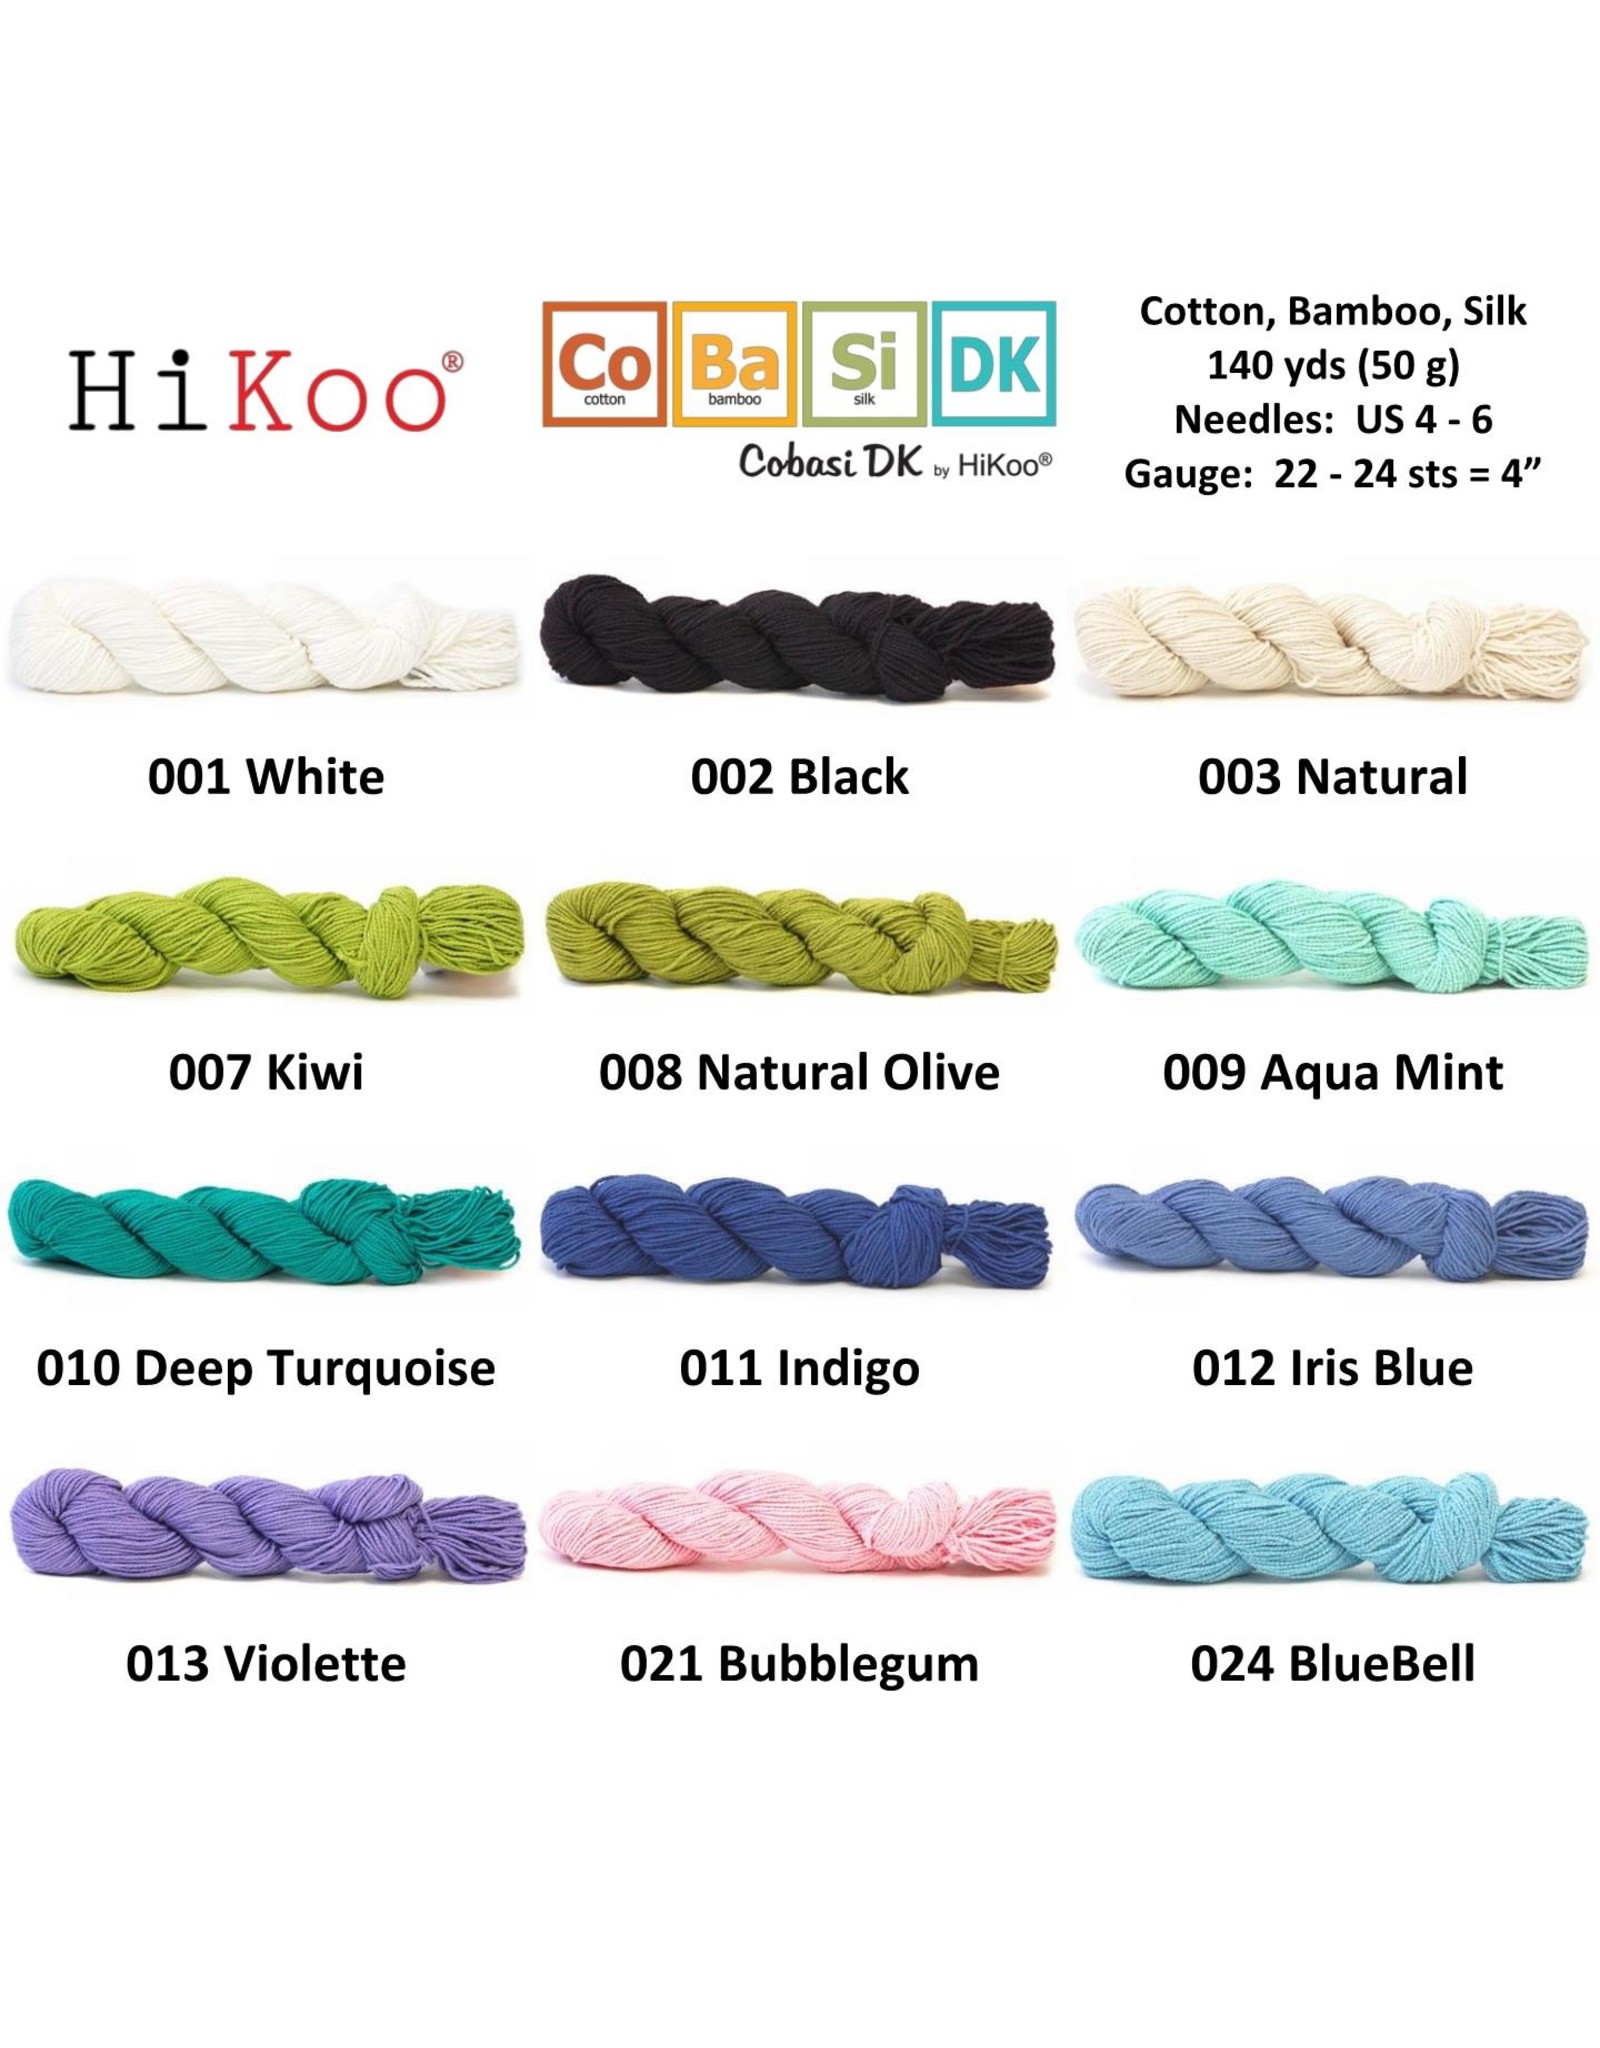 HiKoo CoBaSi Yarn - Black 02 - Cotton, Bamboo, Silk